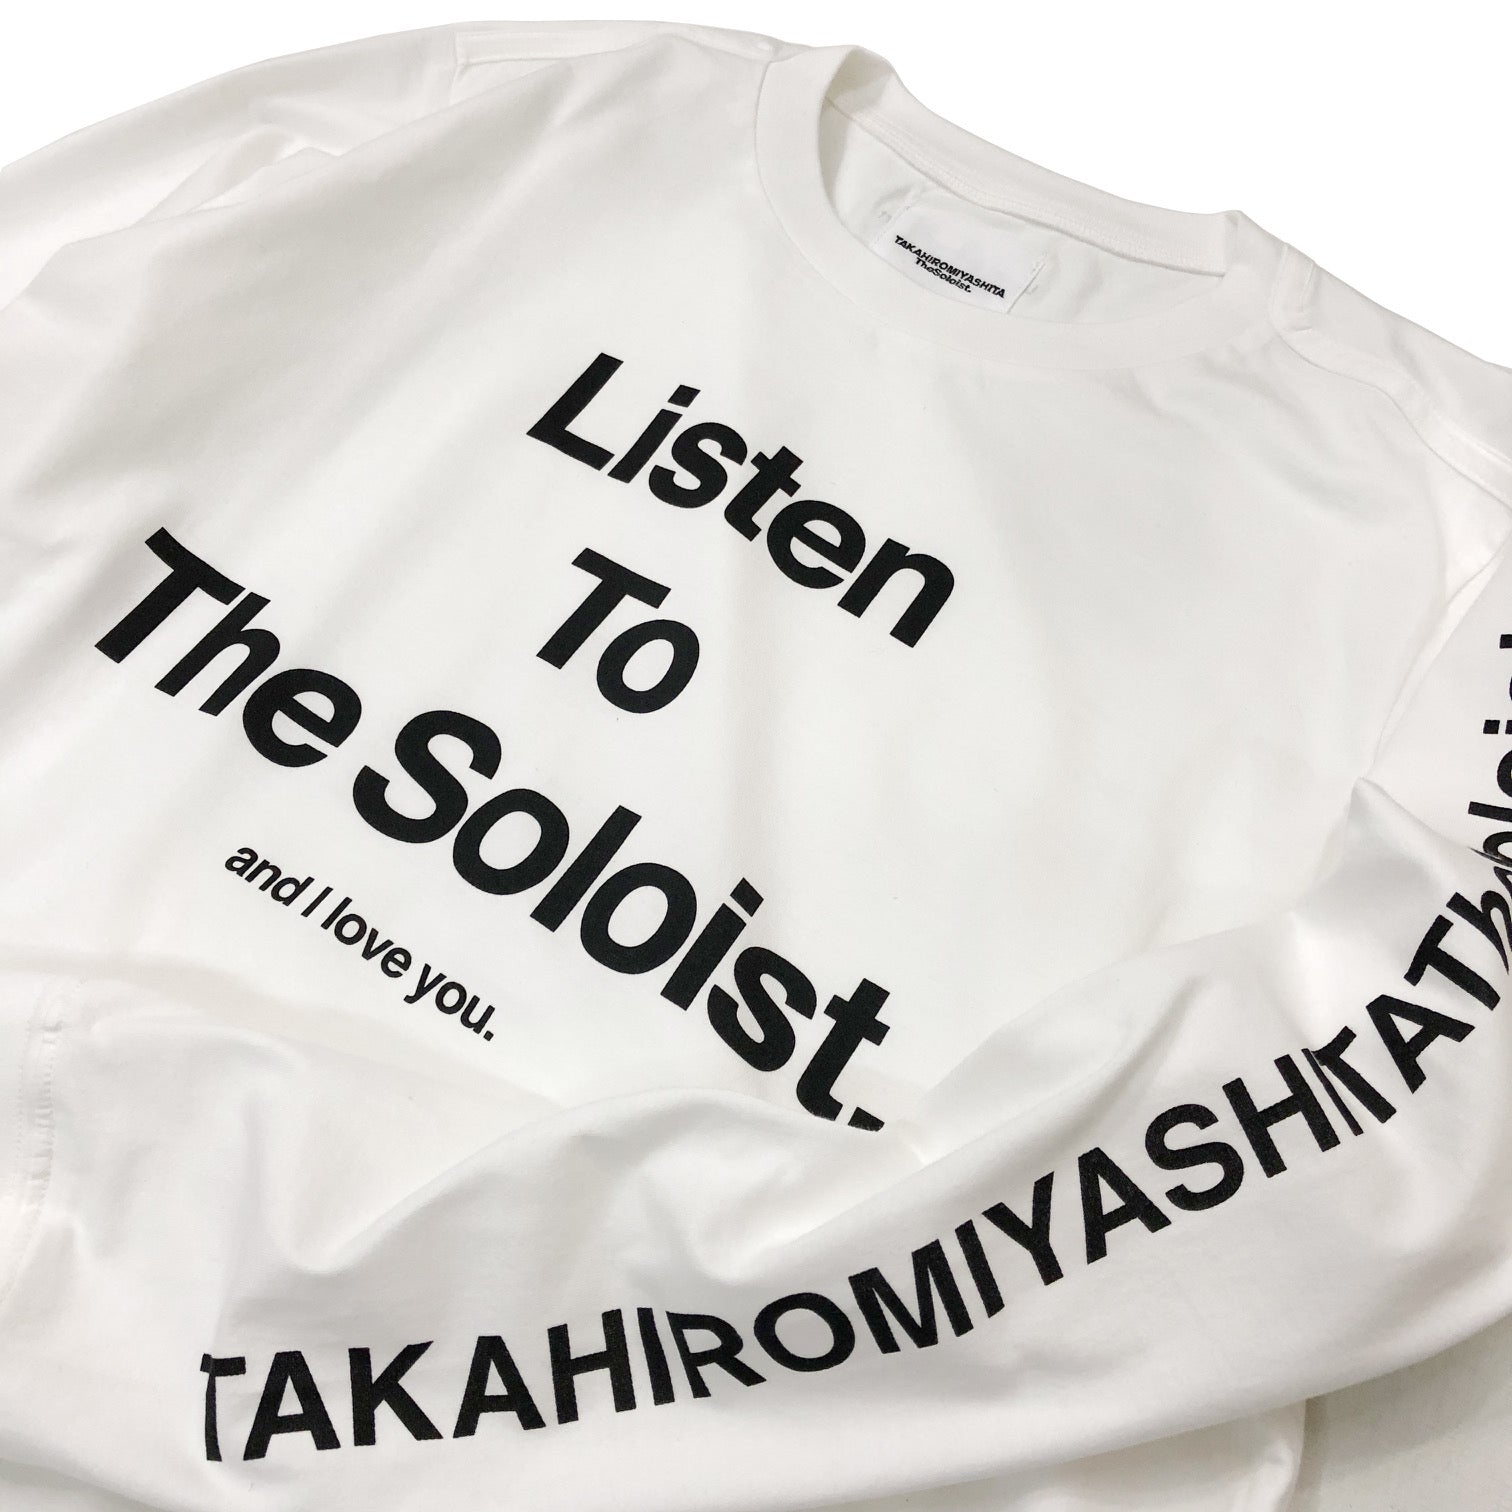 솔로이스트. 긴팔 티셔츠 "LISTEN TO THESOLOIST."